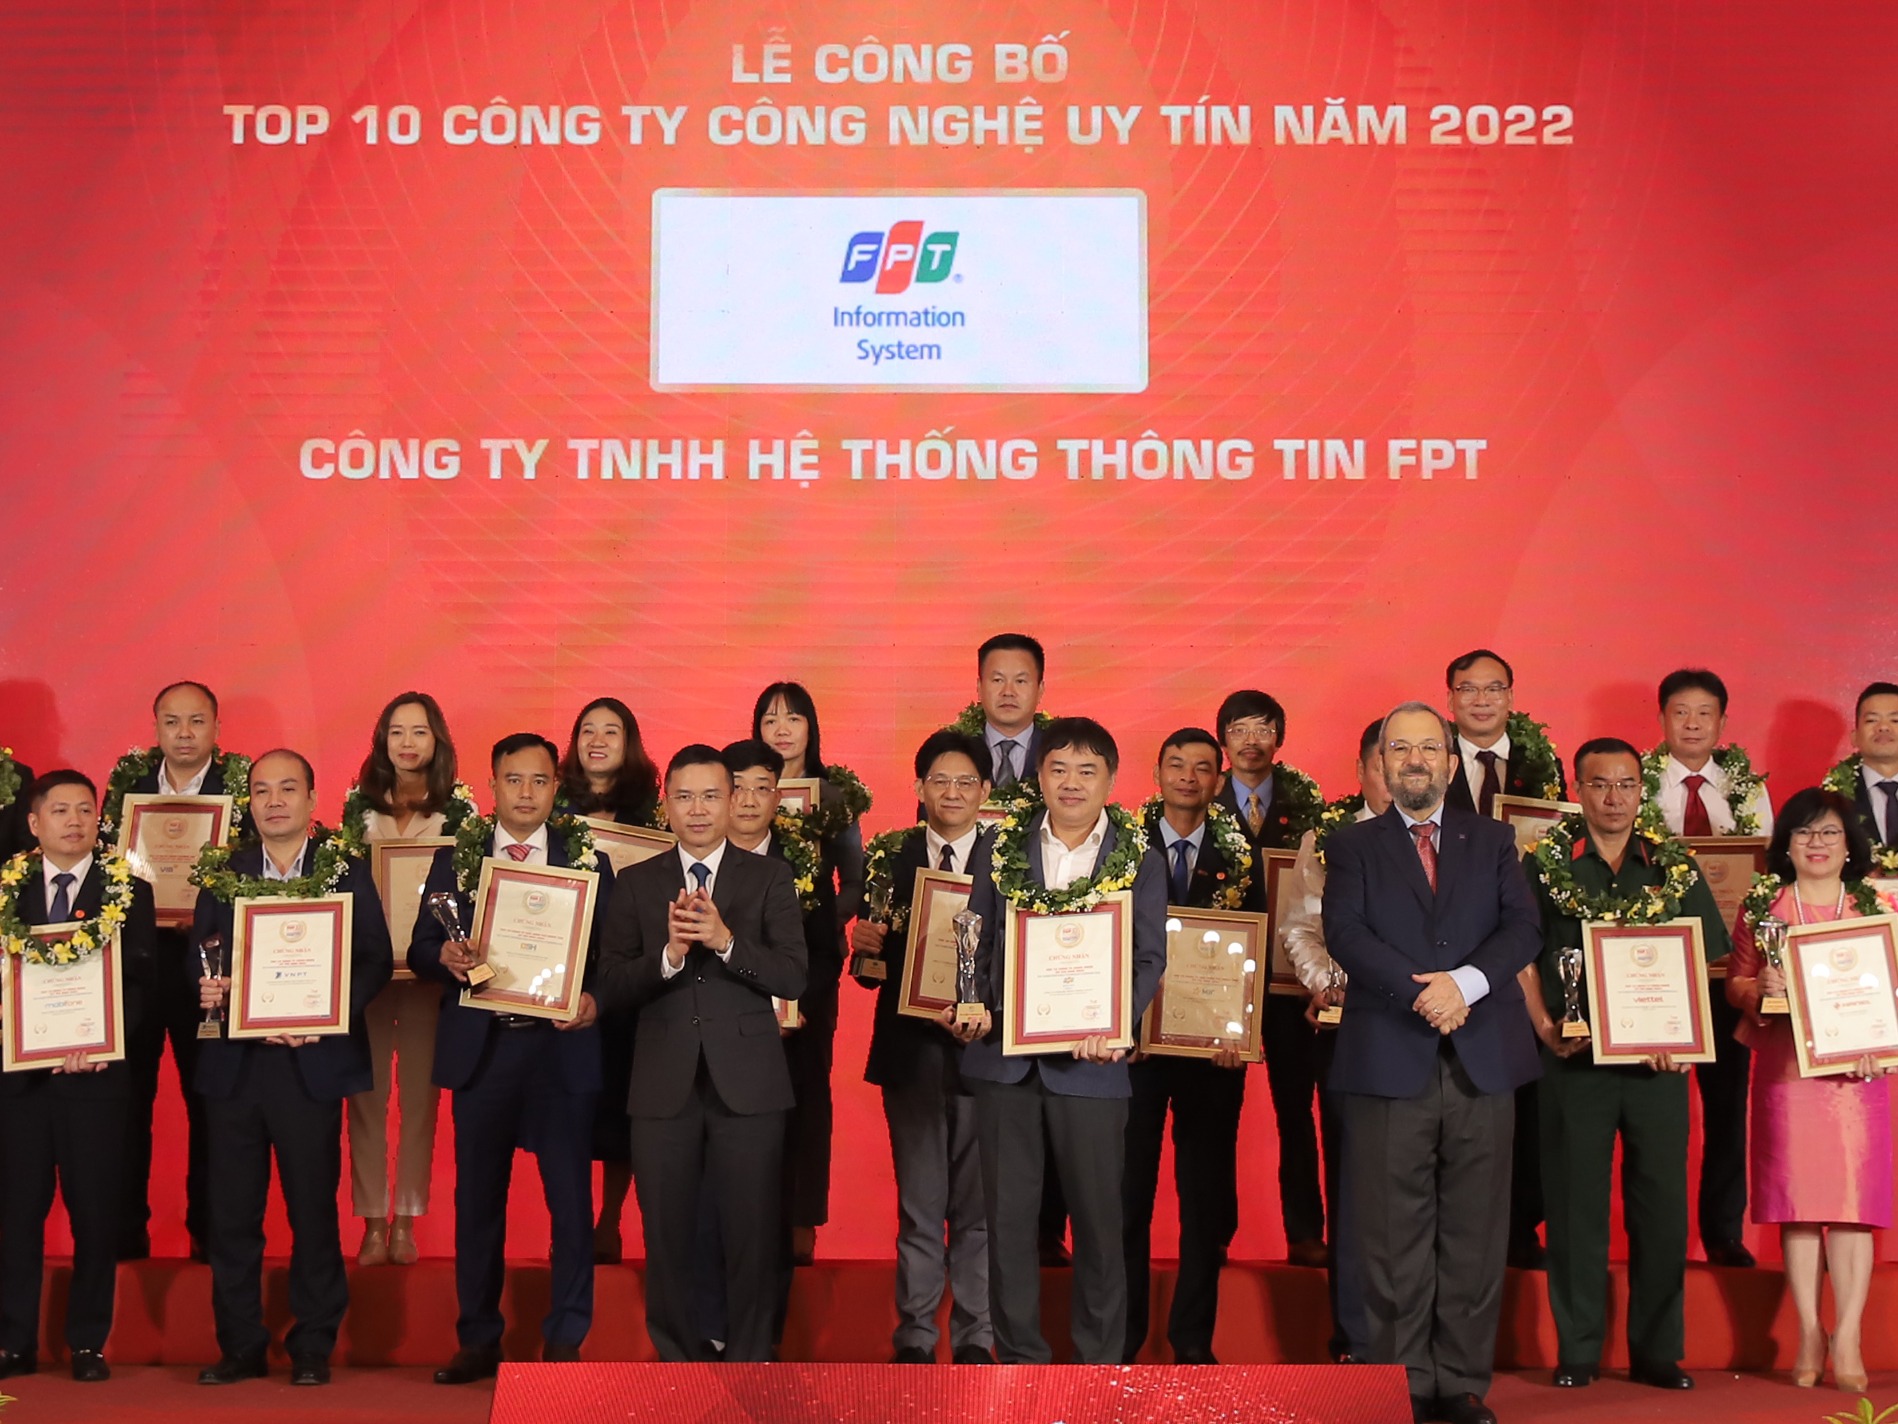 Top 10 Công ty Công nghệ Uy tín Việt Nam 2022 (Hạng mục: Top 10 Công ty Công nghệ cung cấp Dịch vụ, giải pháp Phần mềm & Tích hợp hệ thống uy tín năm 2022)